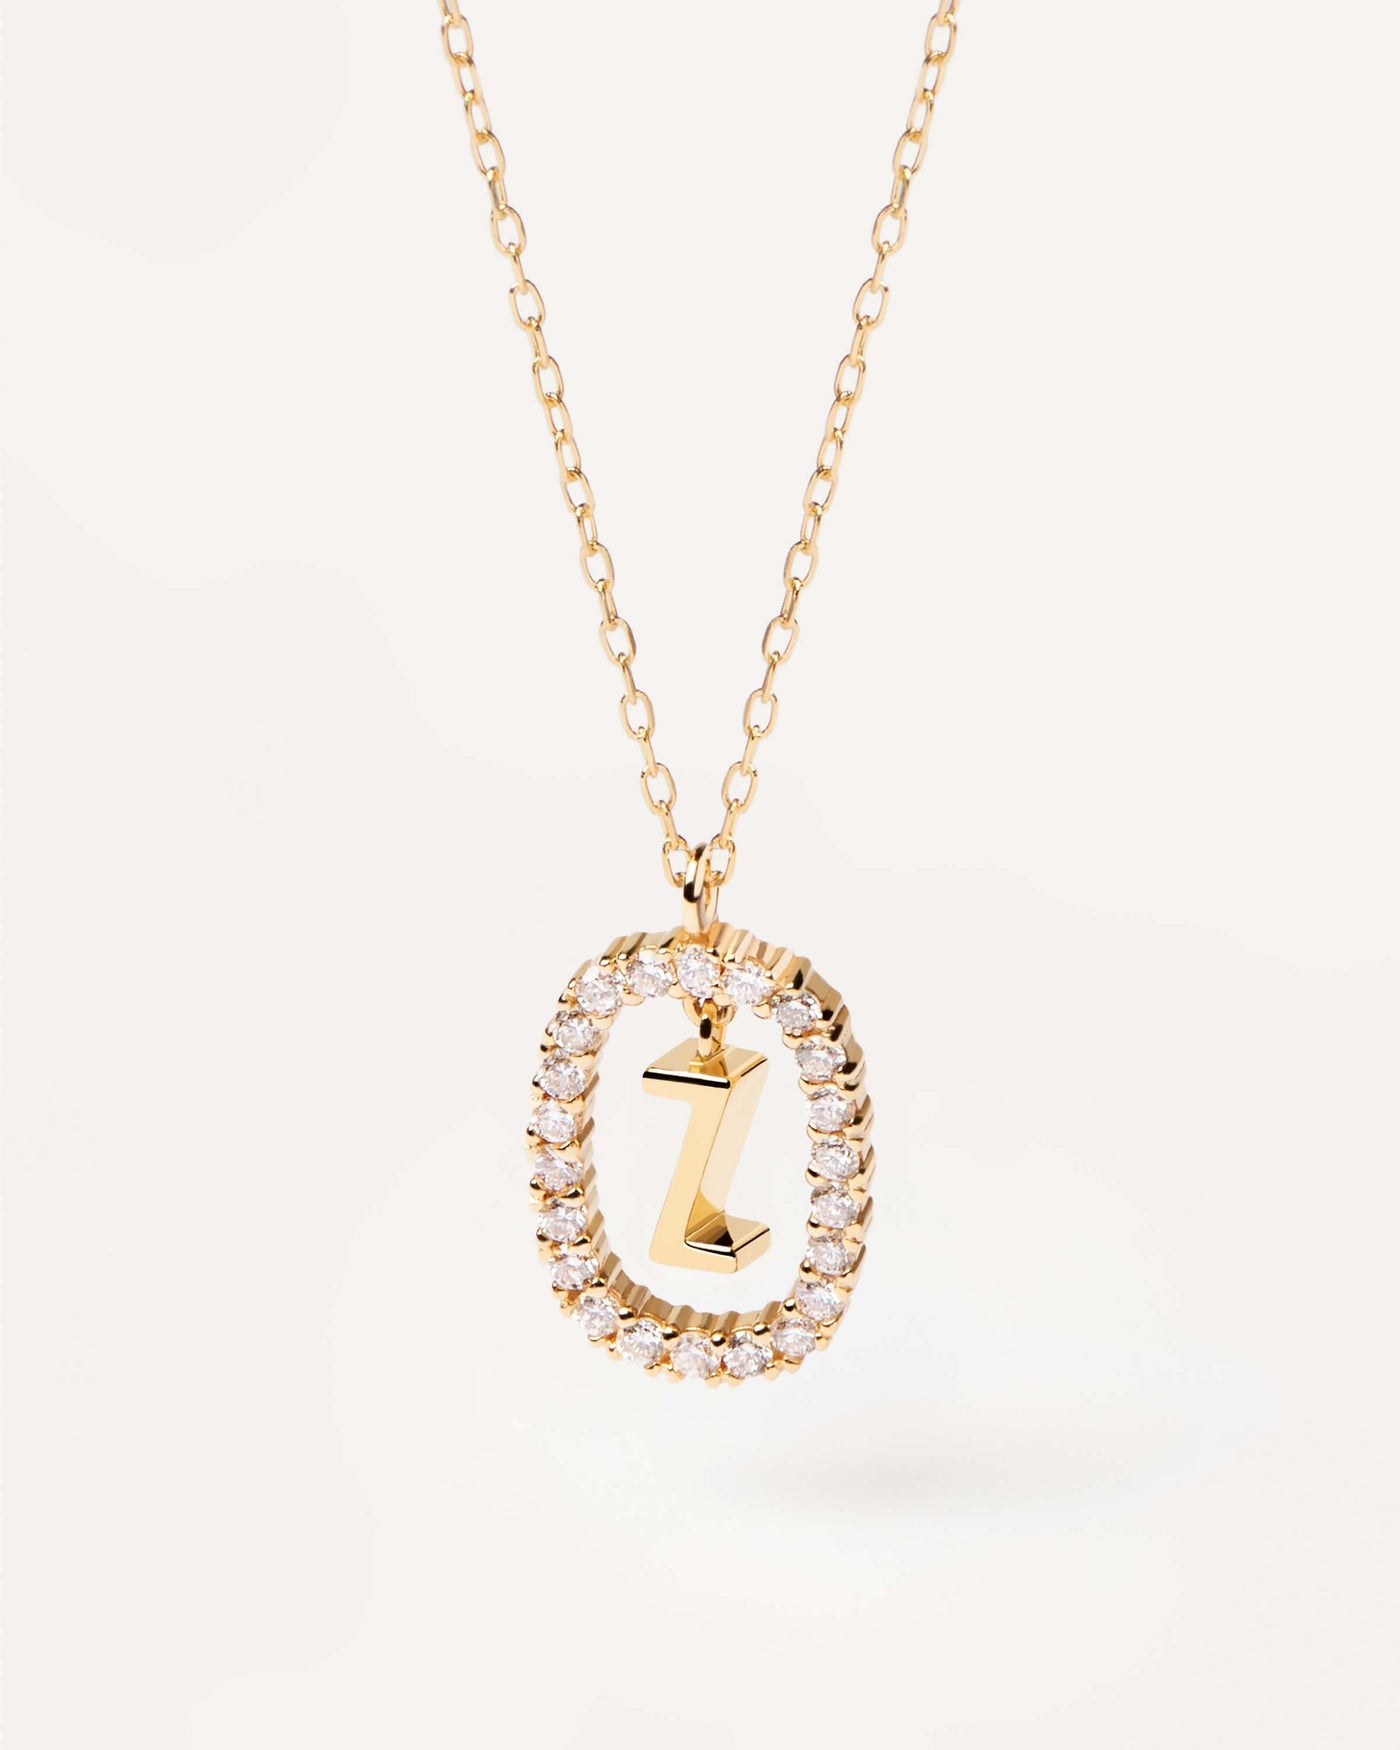 GoldHalskette mit Diamanten Buchstabe Z. Erstes Z-Halskette in solid. Erhalten Sie die neuesten Produkte von PDPAOLA. Geben Sie Ihre Bestellung sicher auf und erhalten Sie diesen Bestseller.